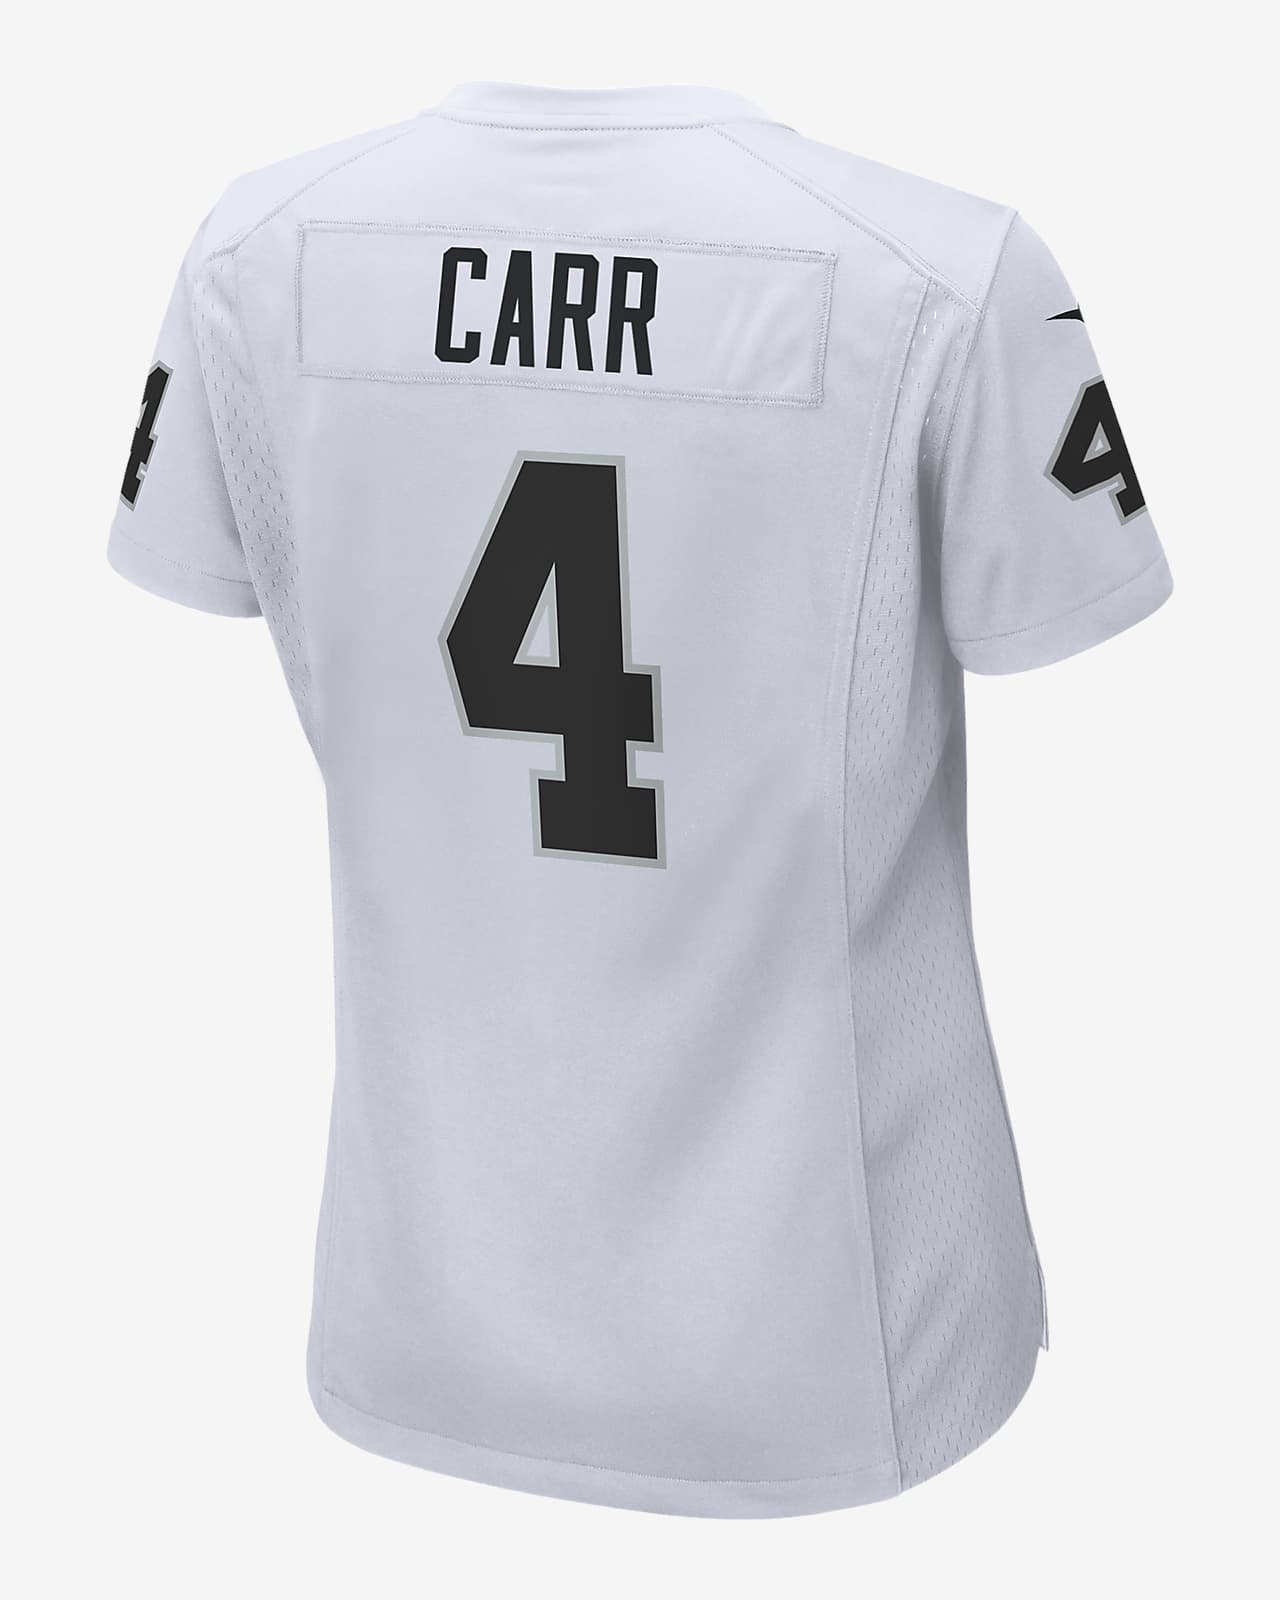 î€€NFLî€ Oakland Raiders (Derek Carr) î€€Women\'sî€ Game Football î€€Jerseyî€. Nike.com